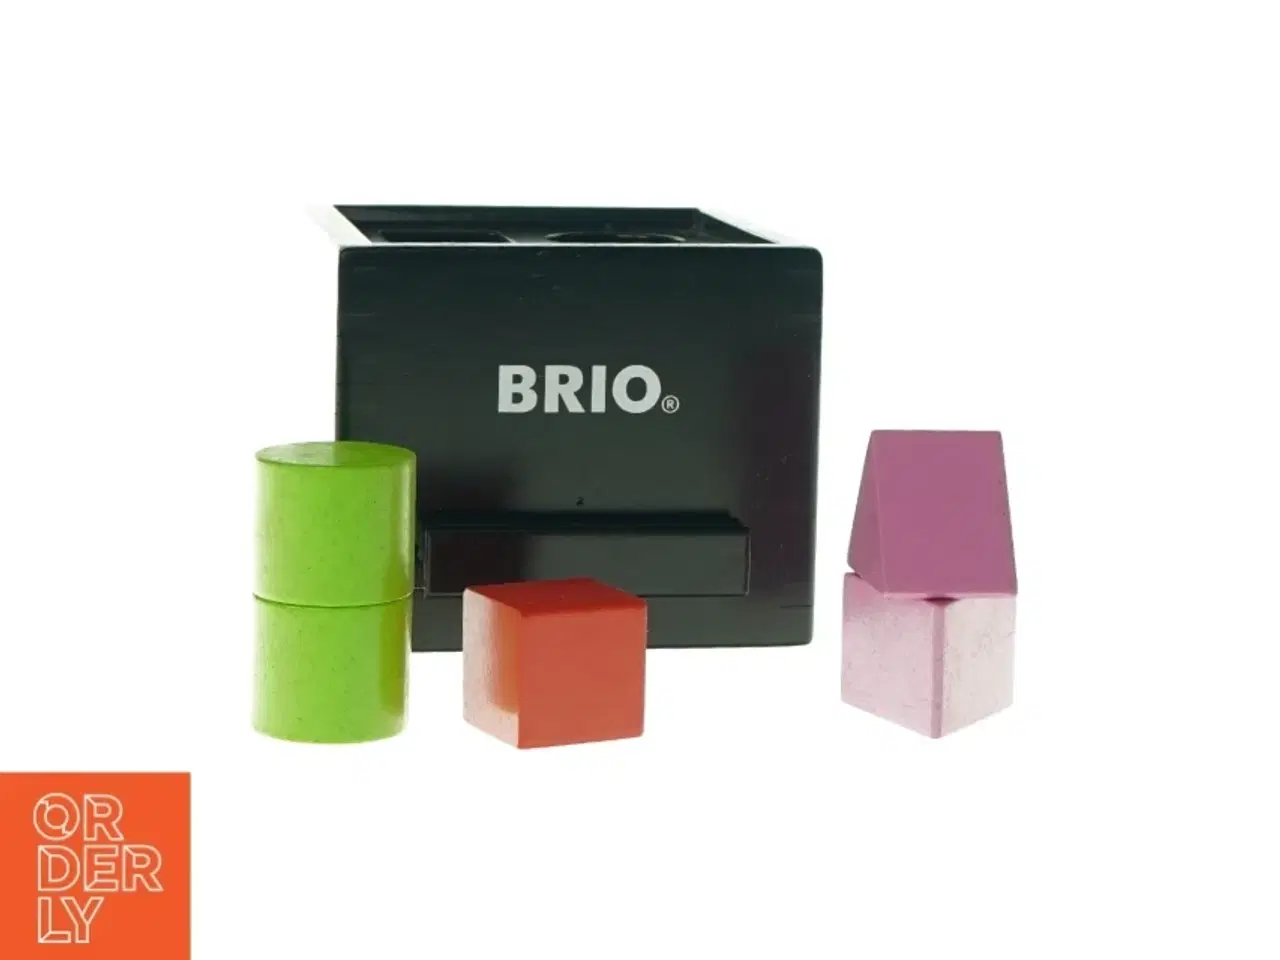 Billede 1 - Kasse med klodser fra Brio